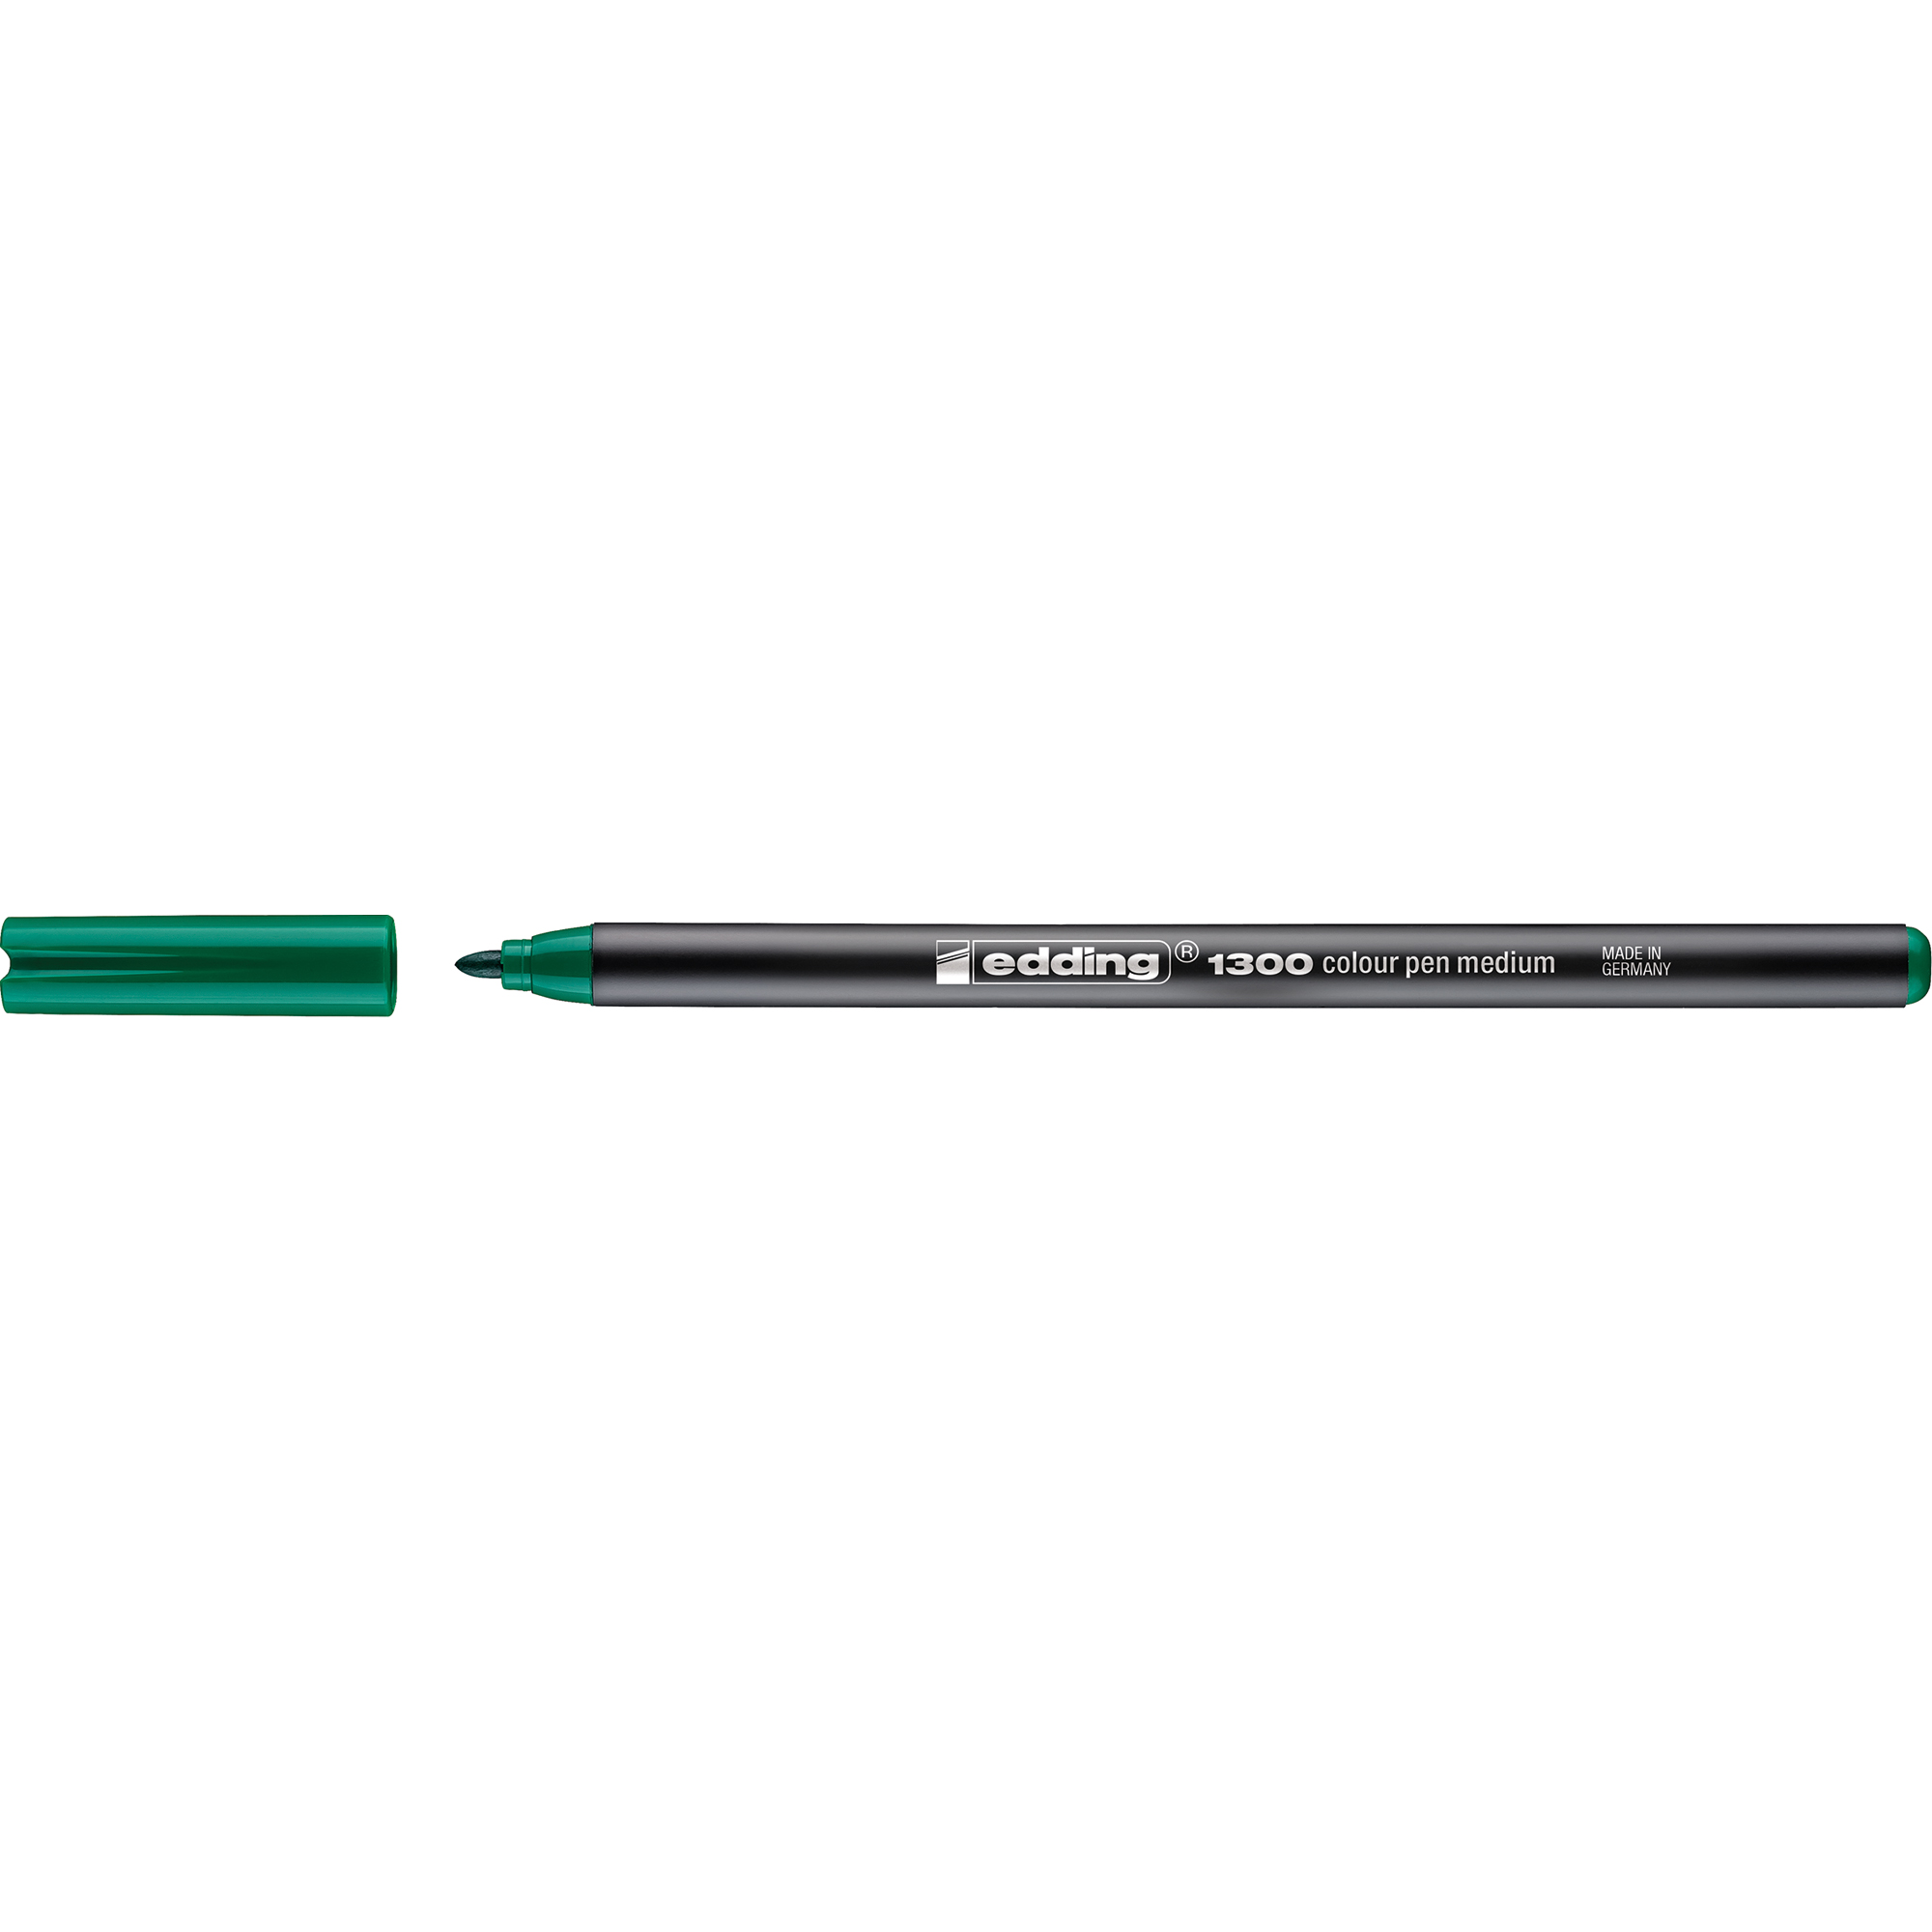 Faserschreiber 1300 Fasermaler, grün EDDING 2mm colourpen